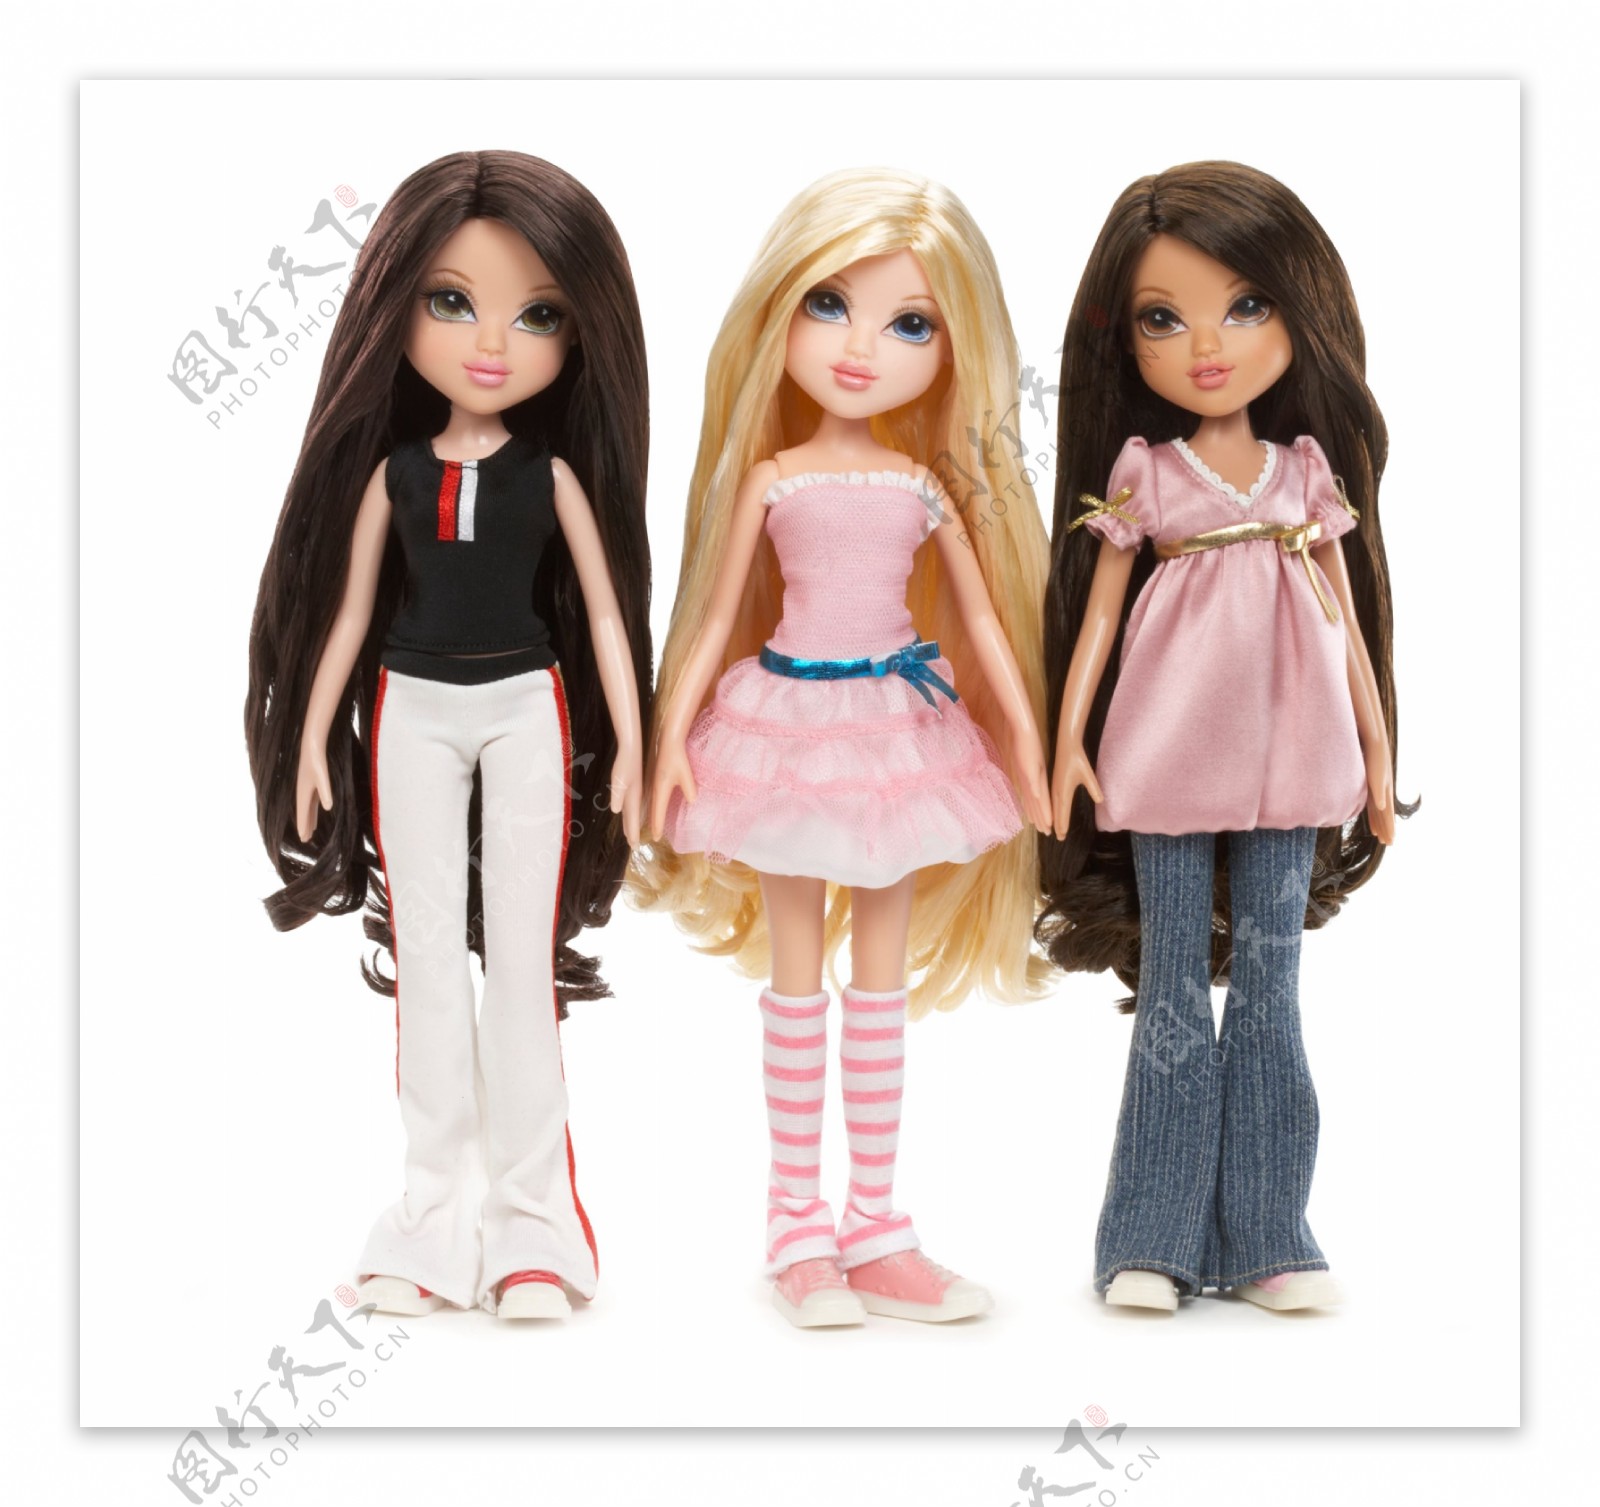 芭比barbie公主moxiegirlz芭比娃娃可爱玩具图片